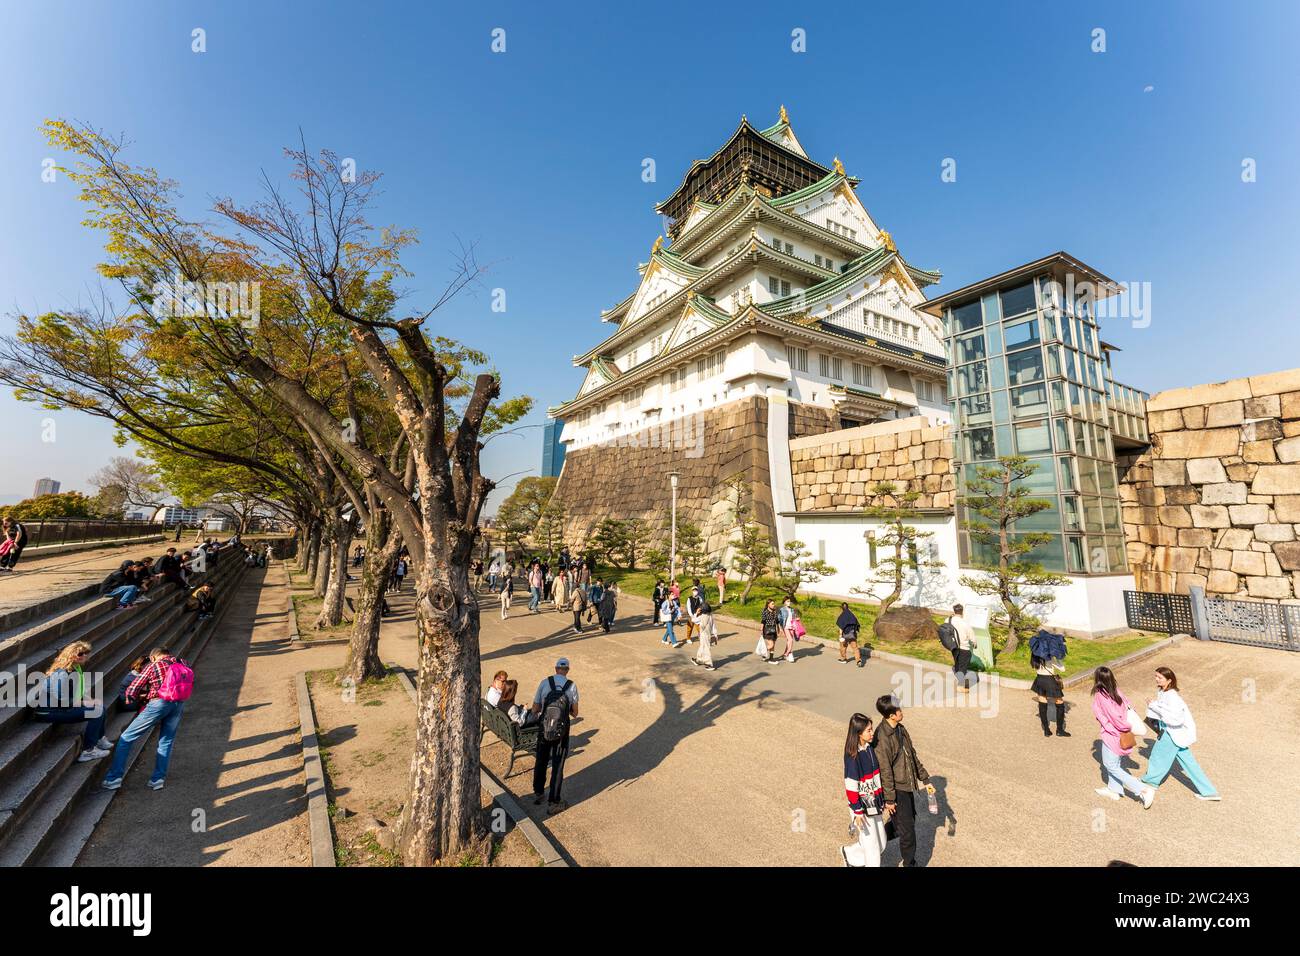 Castello in stile Borogata del Castello di Osaka con il famigerato ascensore Tempaku in vetro e metallo che fornisce l'accesso per le persone disabili alla fortezza. Cielo blu Foto Stock